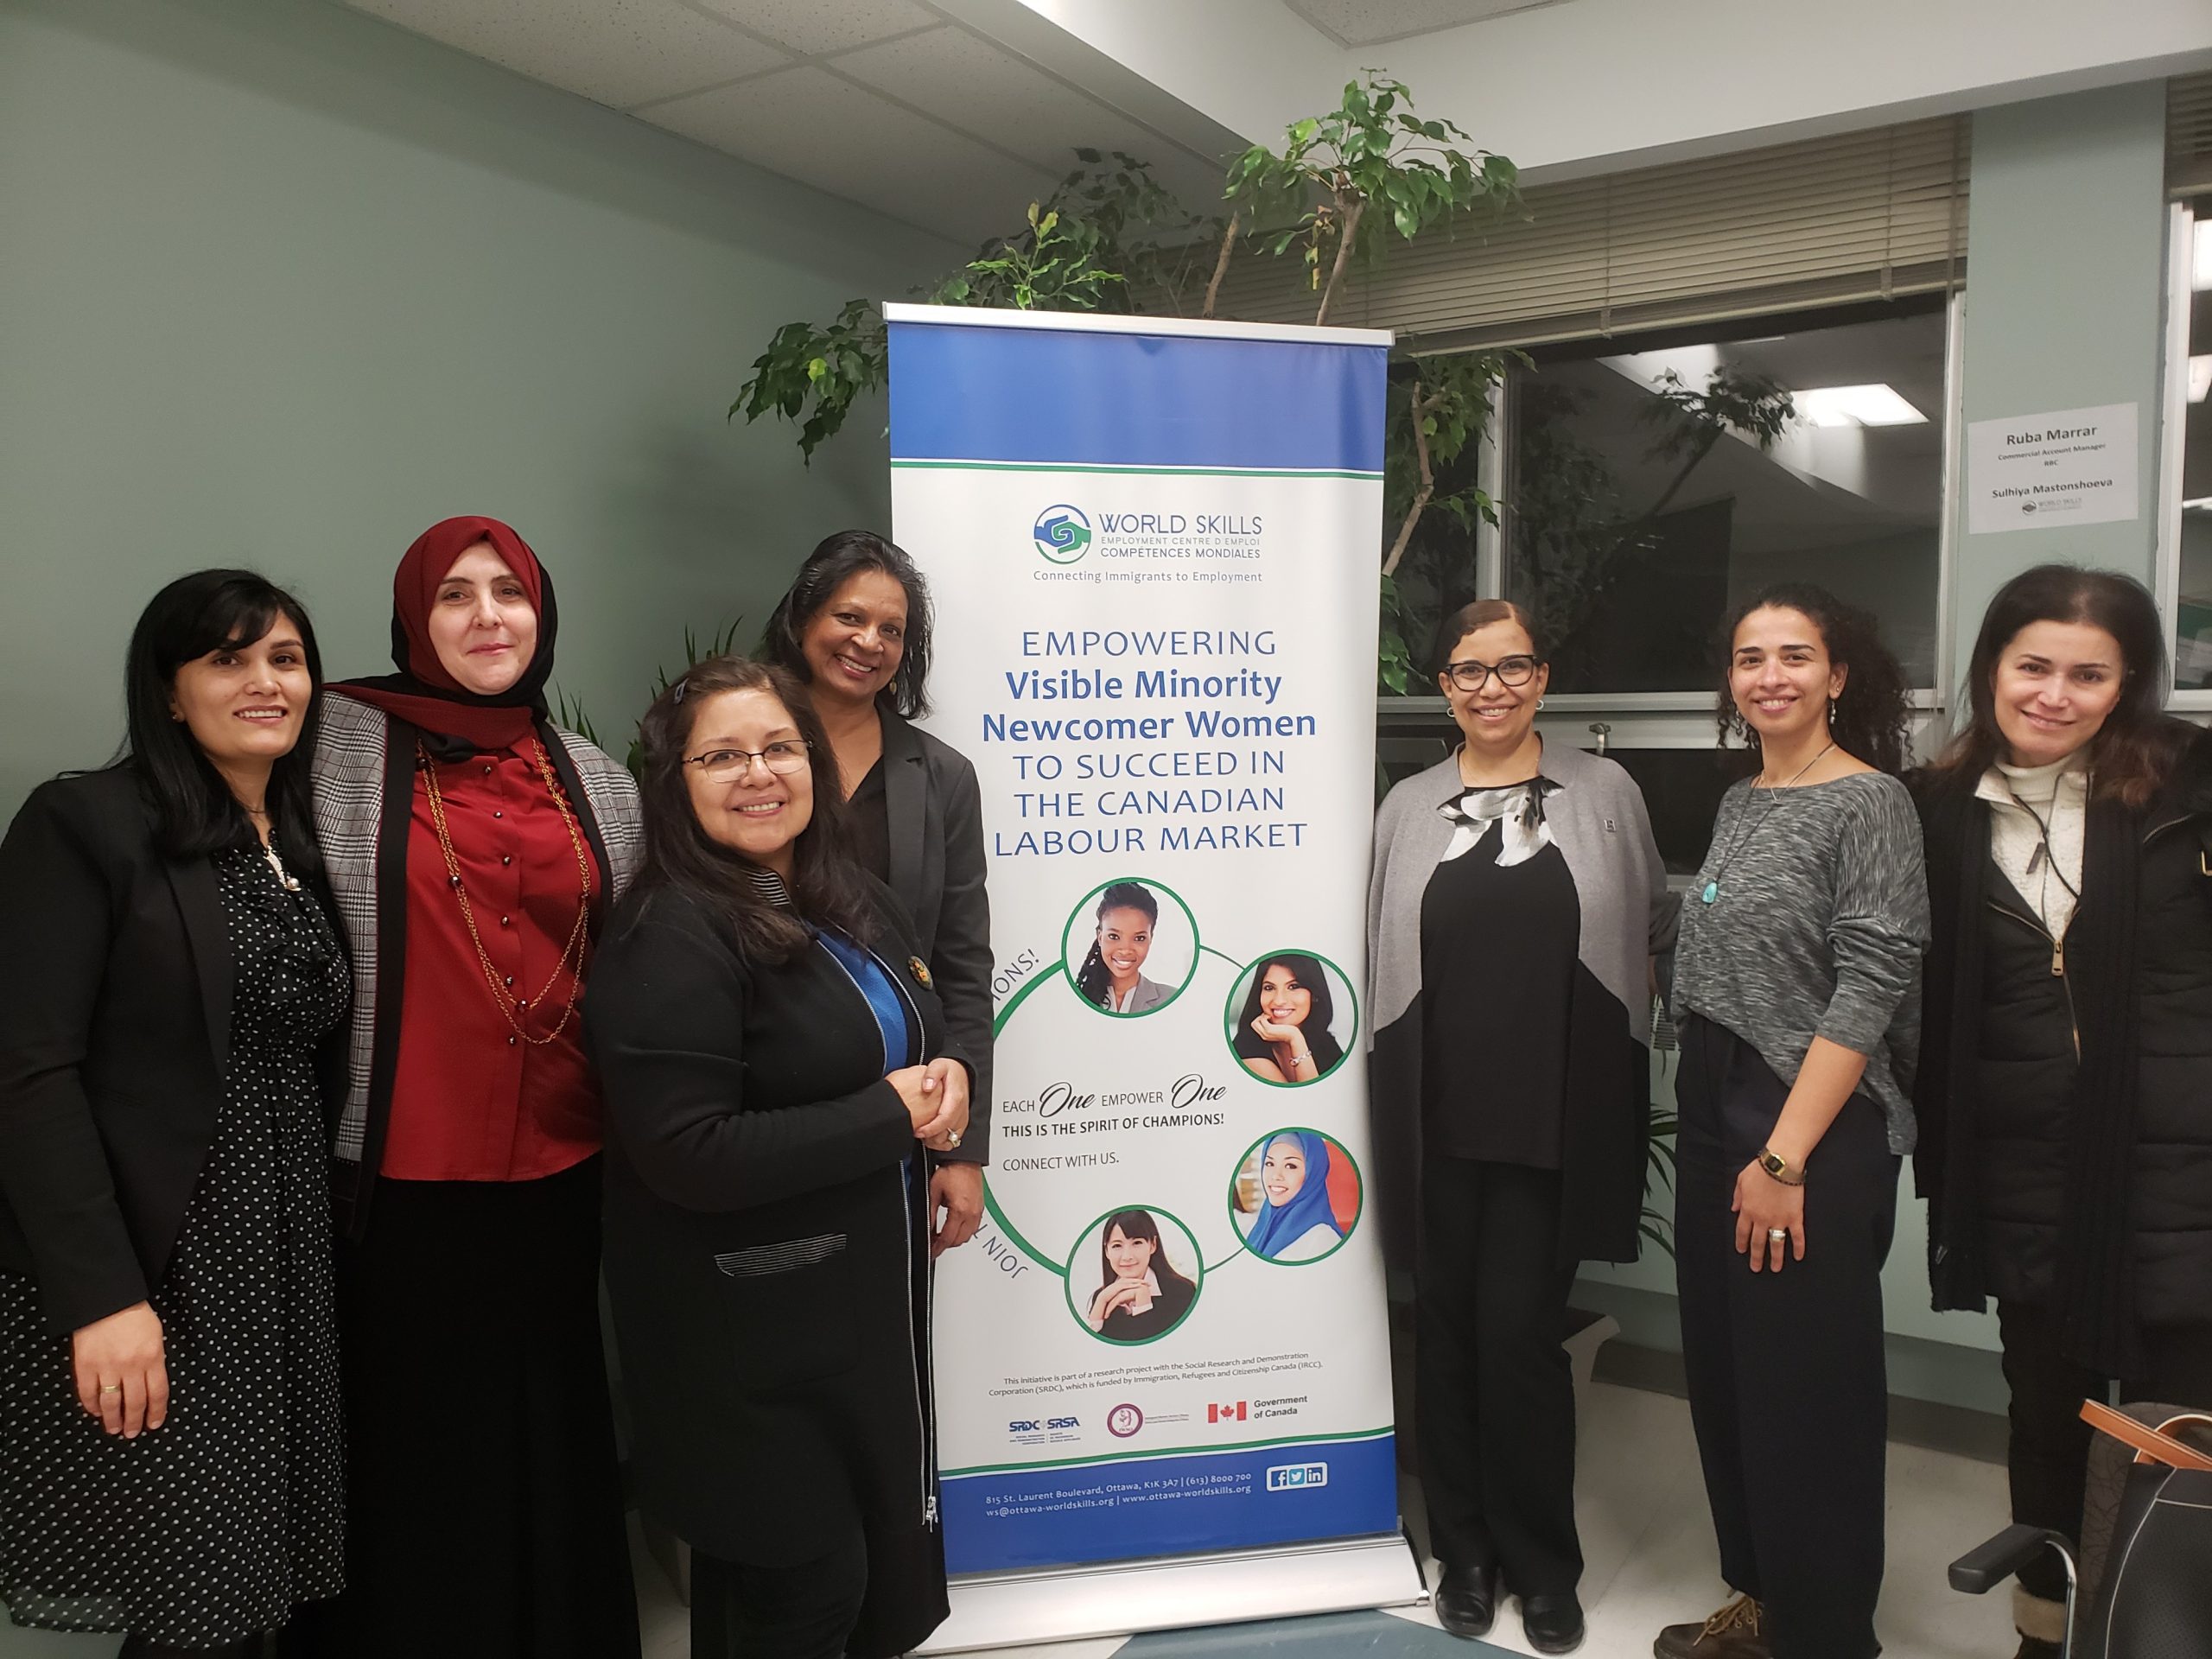 [Caption] Heidi Hemdam (au centre, à droite) et d'autres personnes de l'initiative « Autonomisation des femmes nouvellement arrivées à l'intégration et la réussite sur le marché du travail canadien » du centre d'emploi Compétences mondiales.